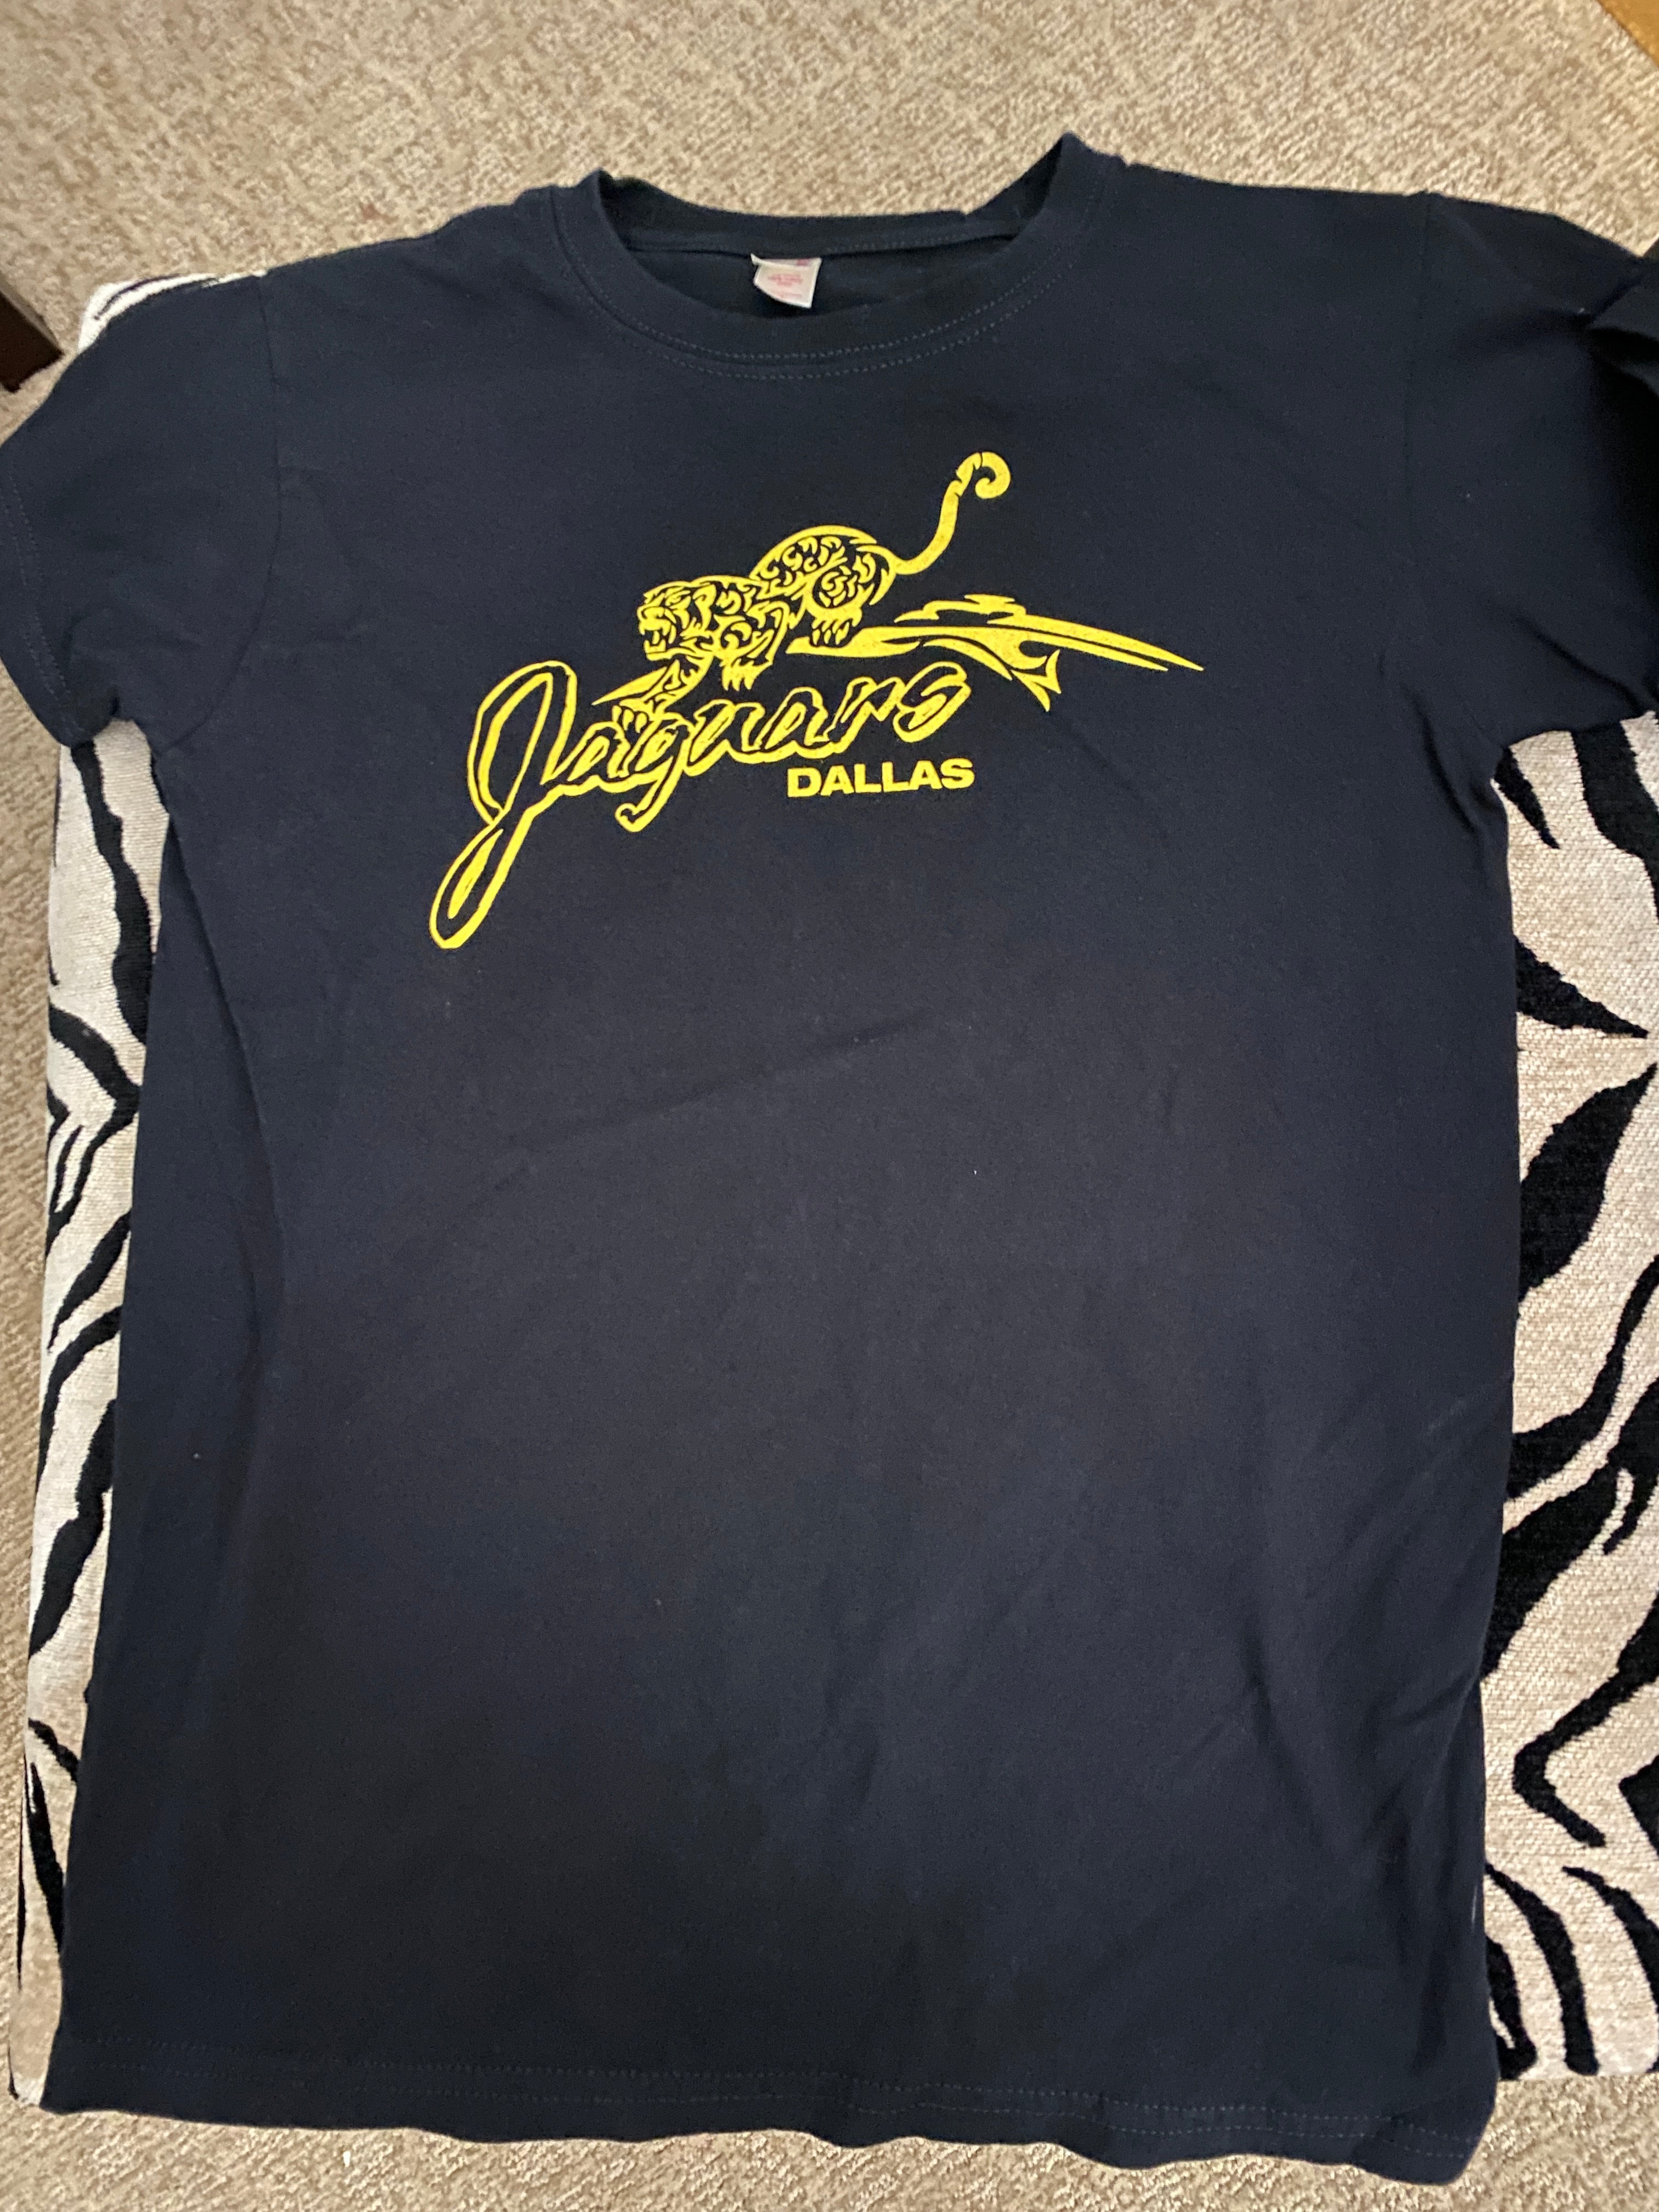 Black & Yellow "Jaguars" T-Shirt ~ Autographed